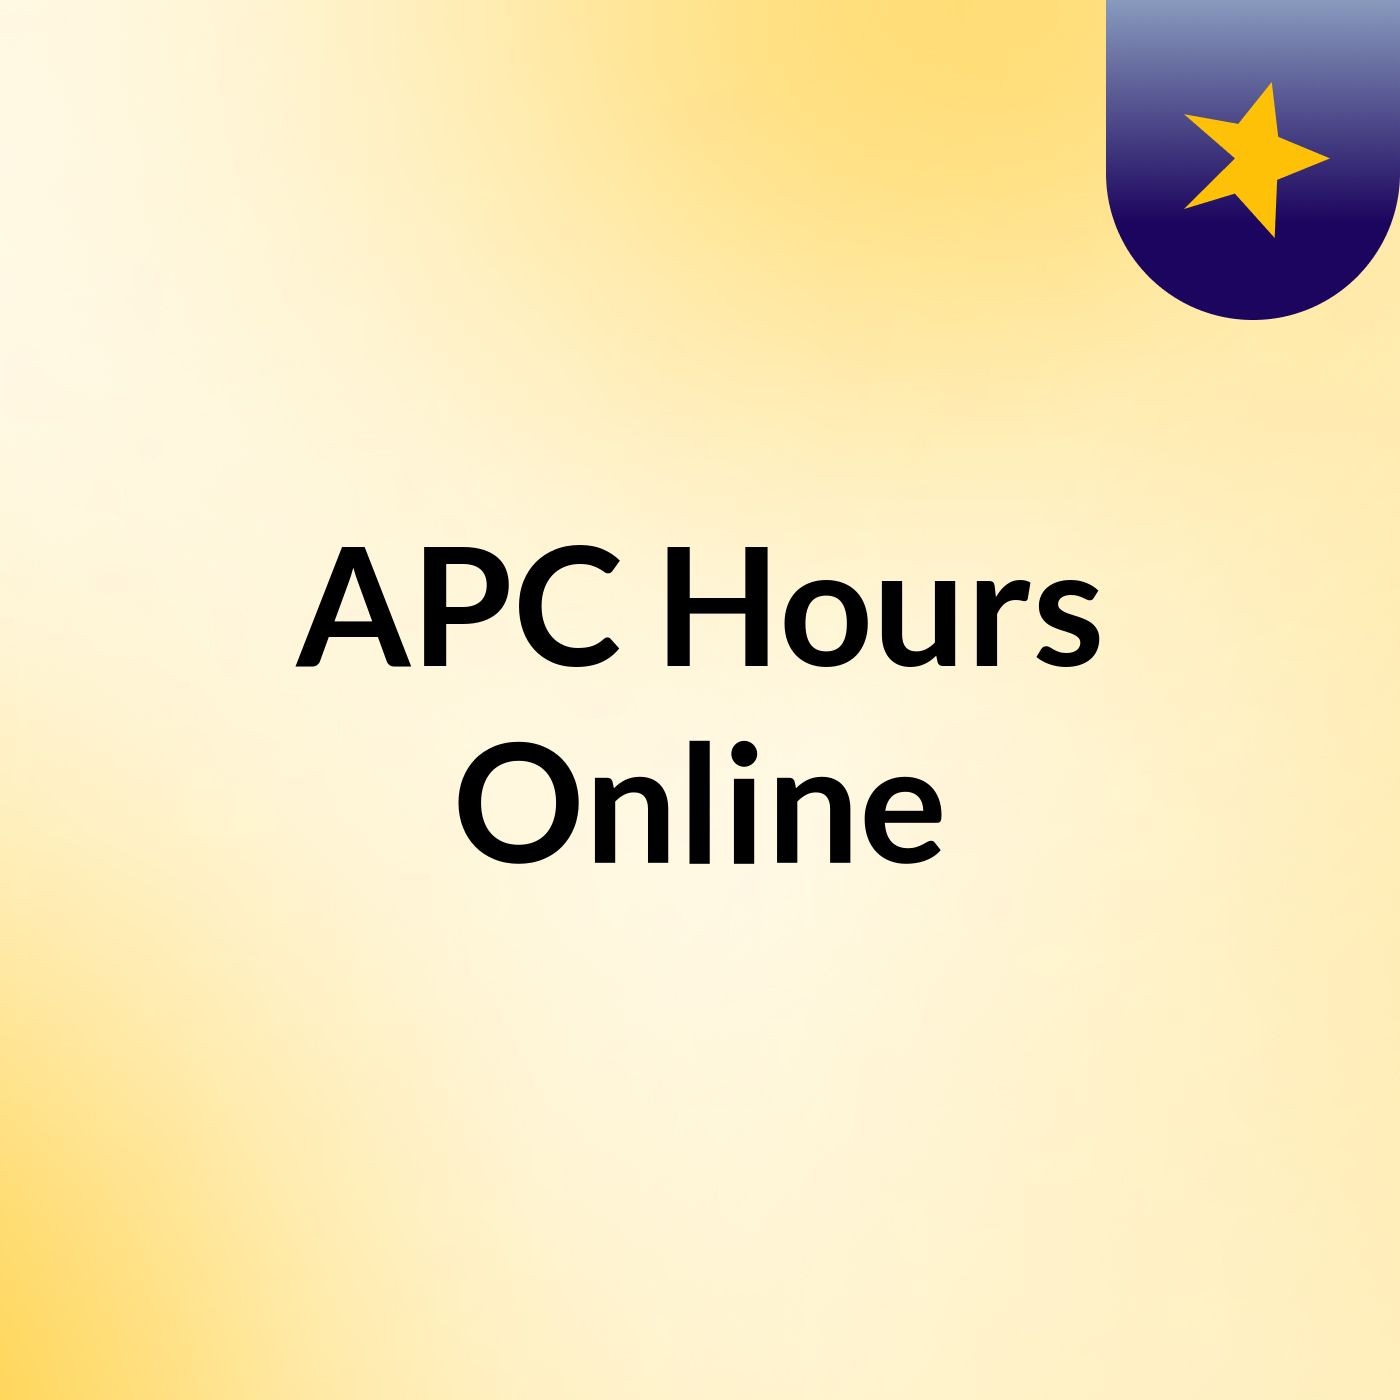 Episode 2 - APC Hours Online